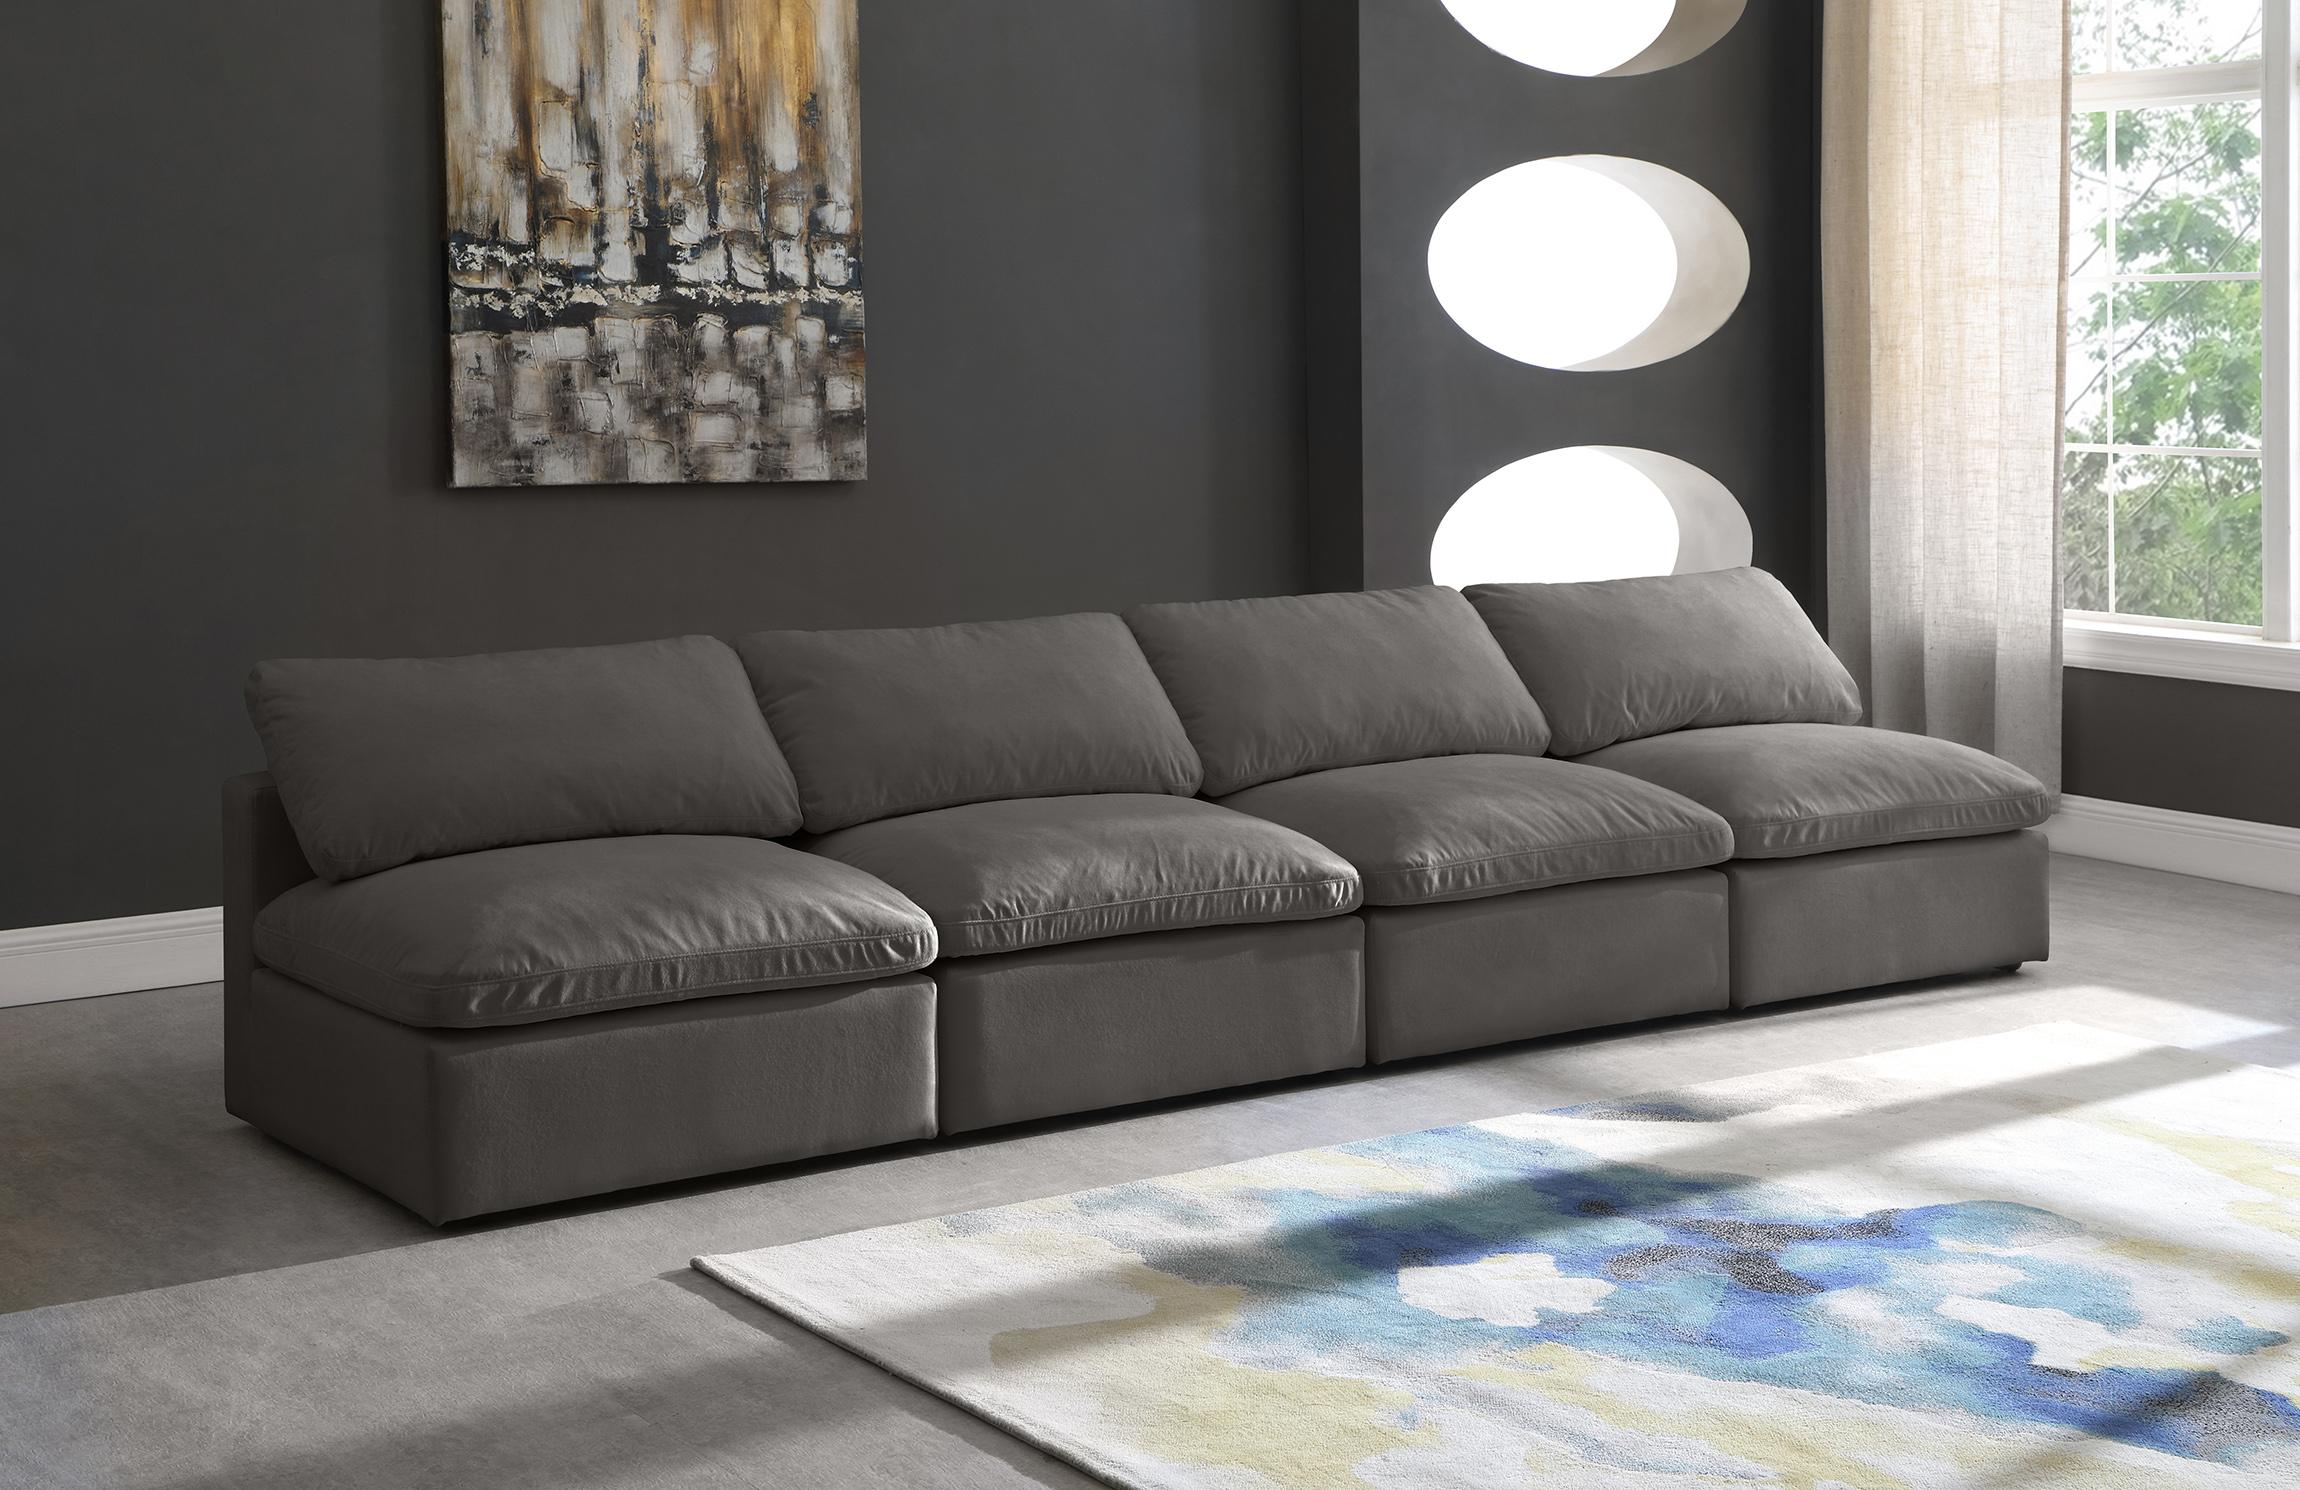 

    
GREY Velvet Sofa Armless 140 Cloud Modular Overstuffed Down Filled SOFLEX Modern
